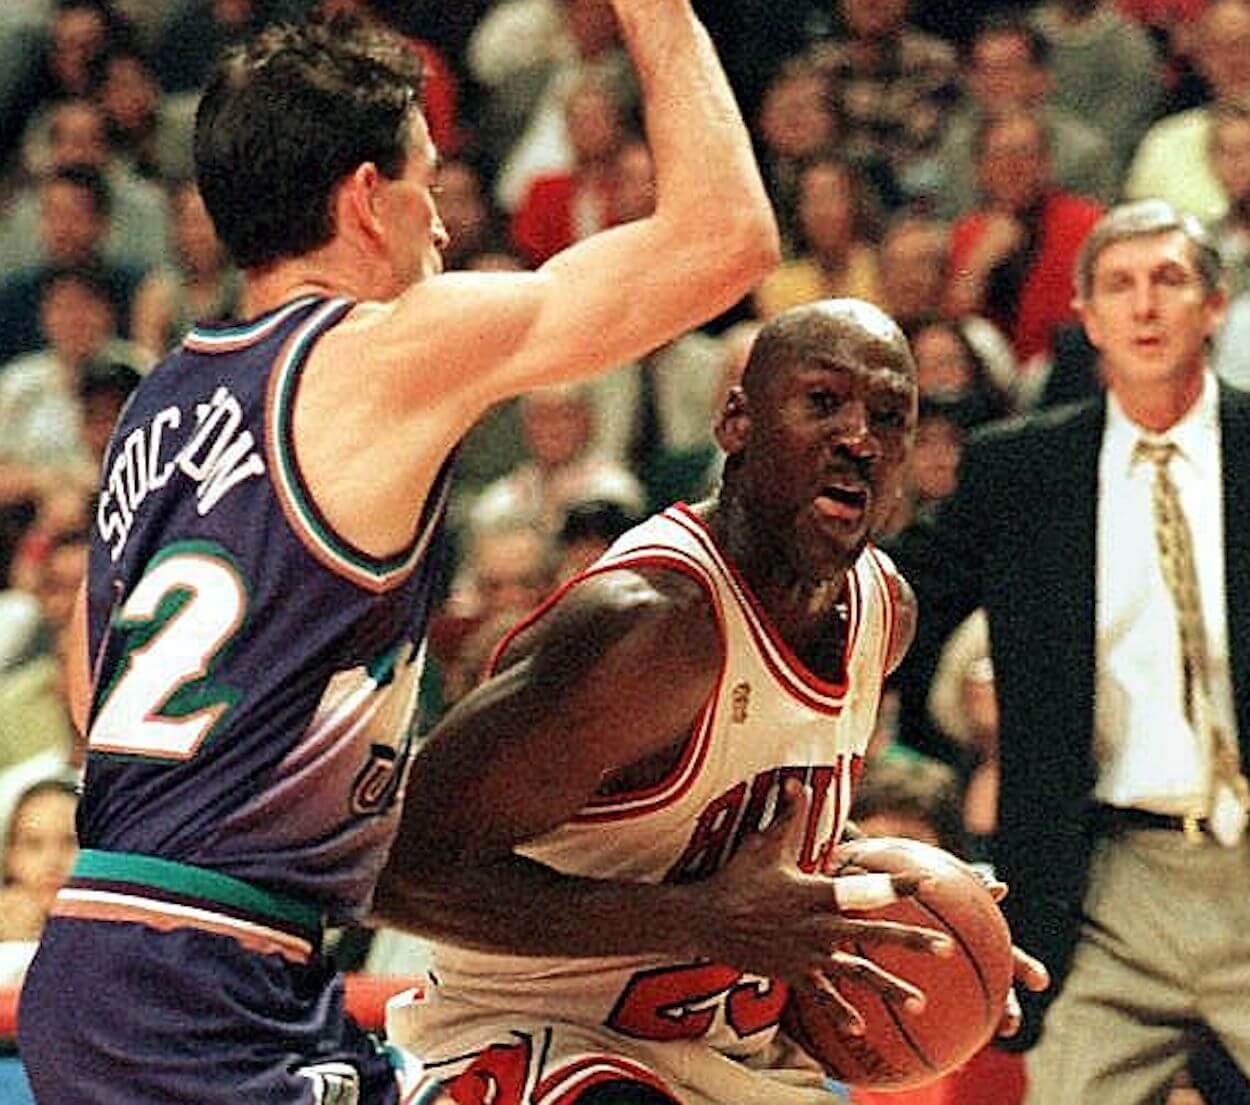 John Stockton (L) defends Michael Jordan (R) during the 1997 NBA Finals.